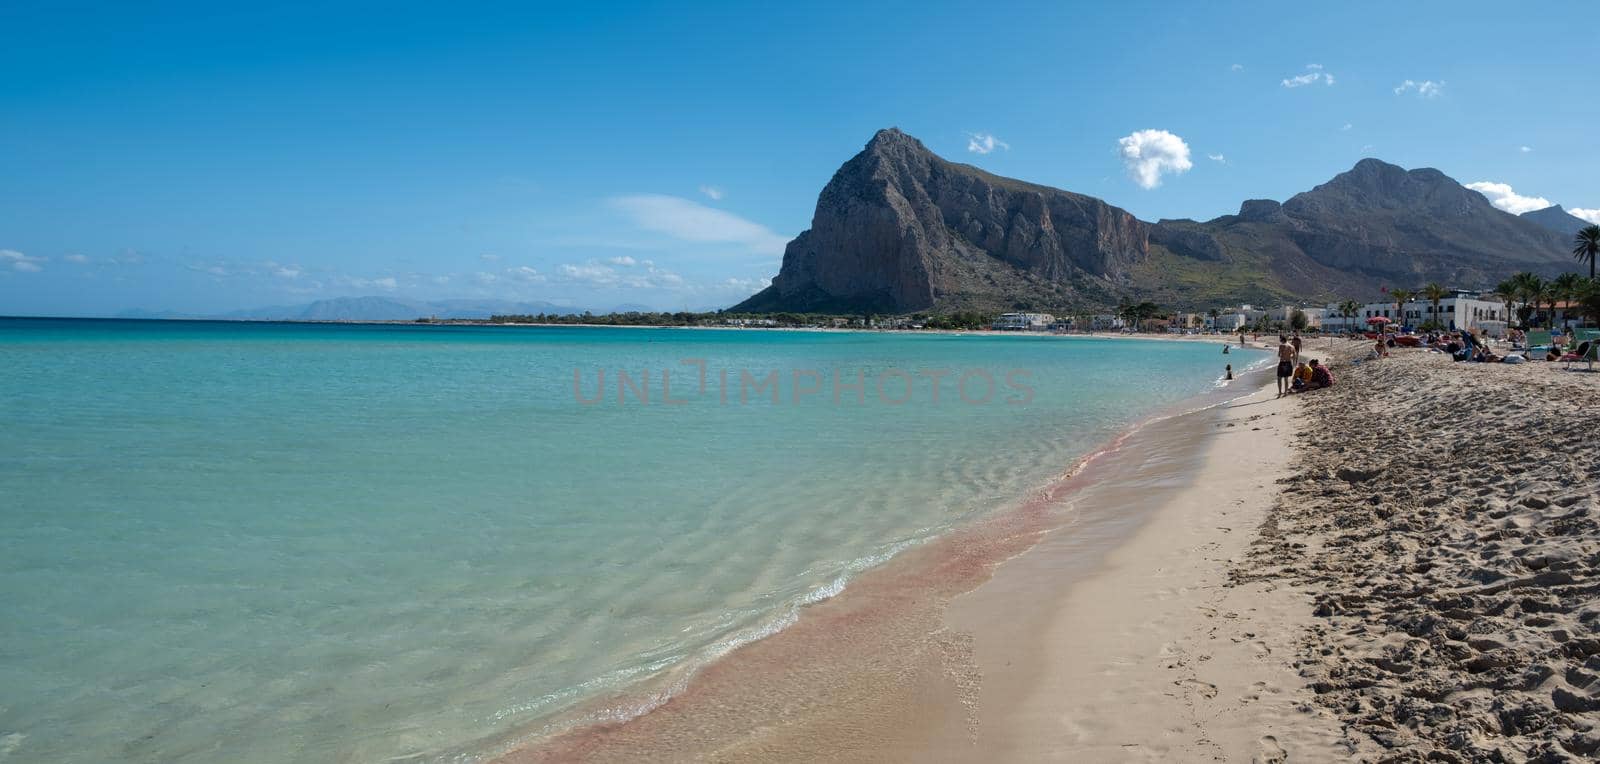 San Vito Lo Capo Sicily, San Vito lo Capo beach and Monte Monaco in background, north-western Sicily by fokkebok